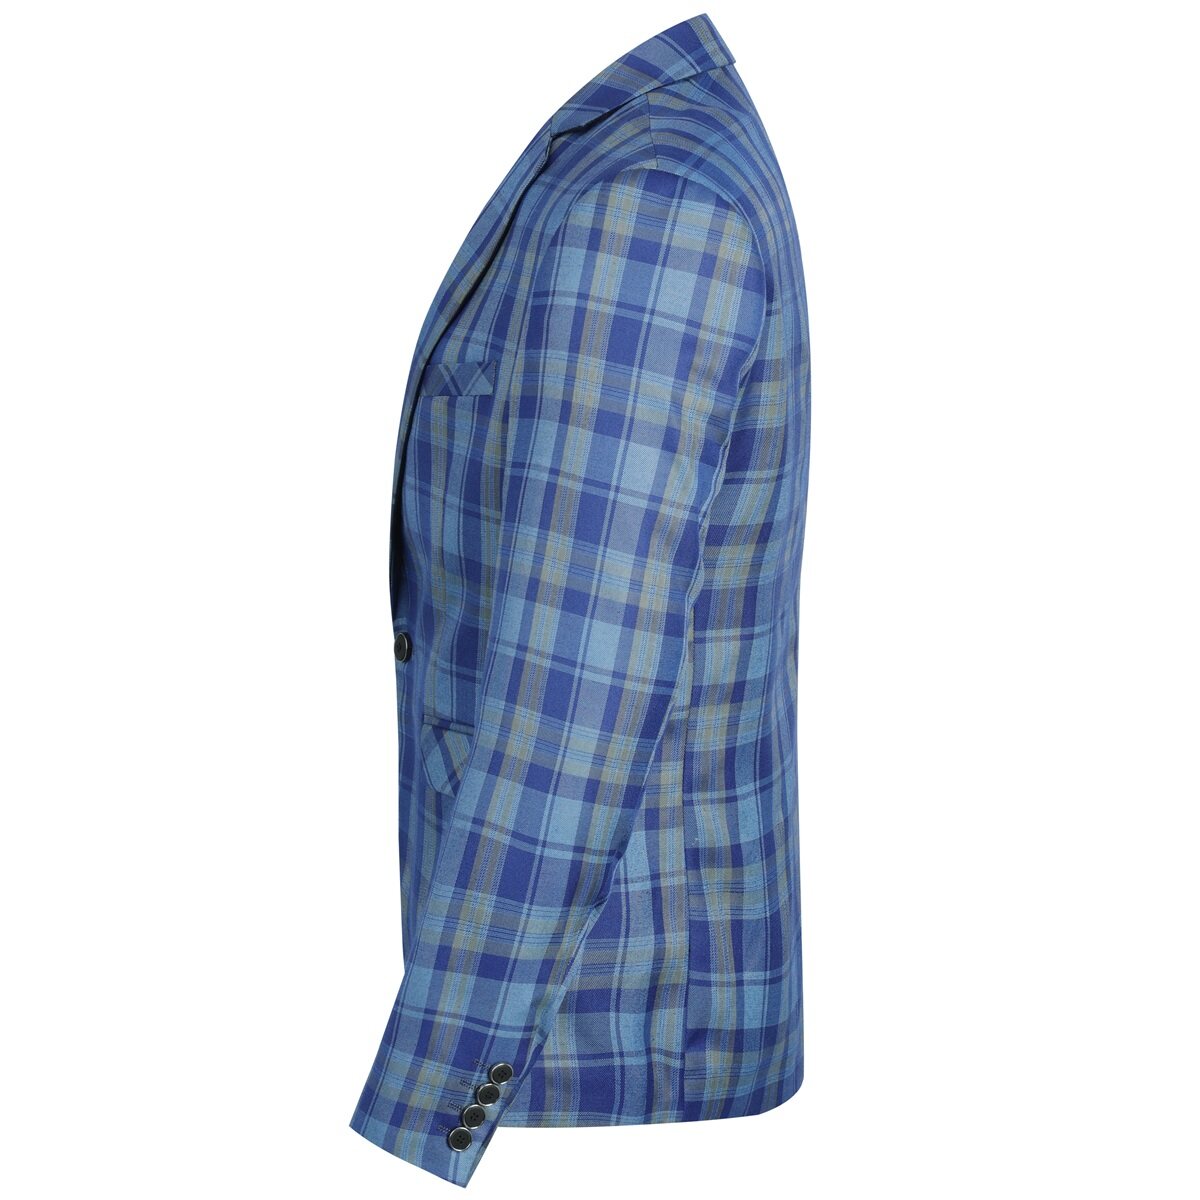 Plaid Stripe Suit Slim Fit 2-Piece Suit Light Blue